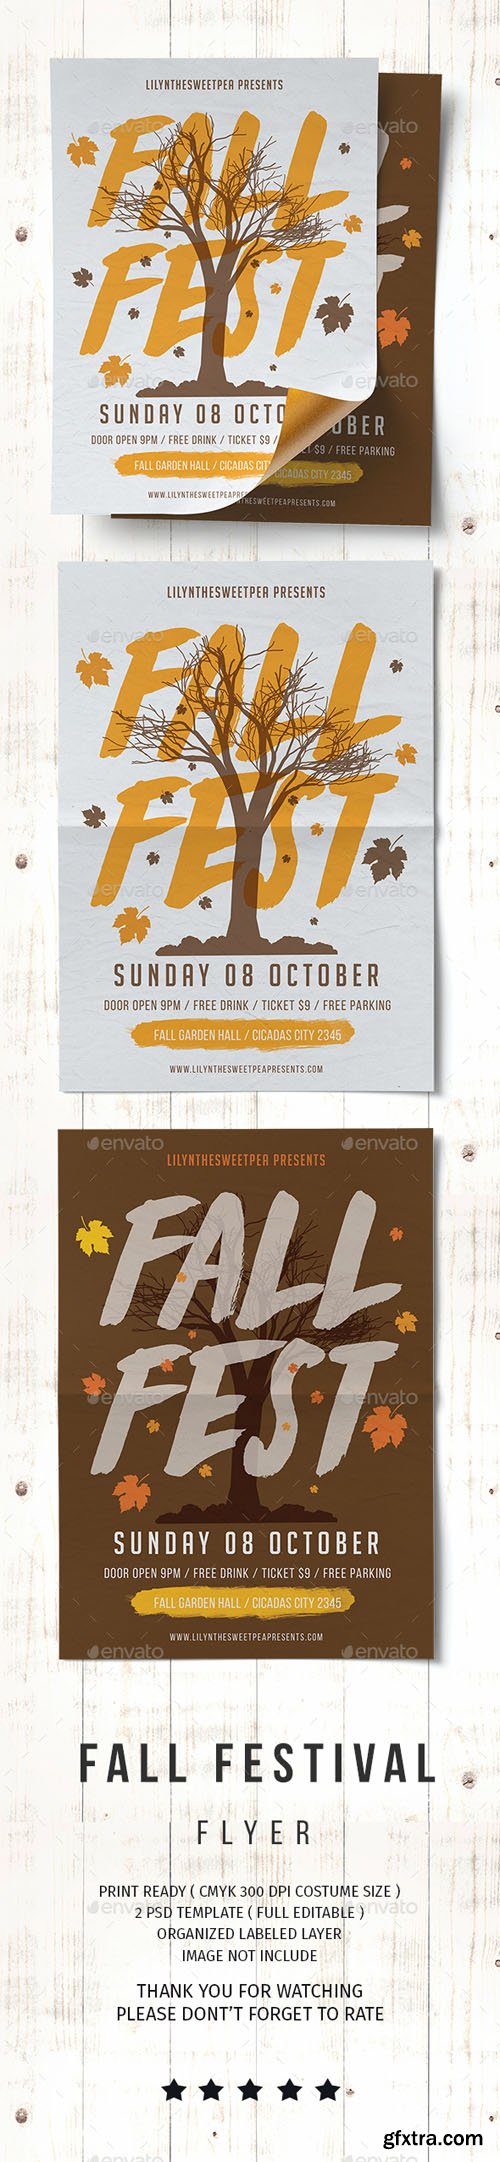 GR - Fall Fest Flyer 20508875